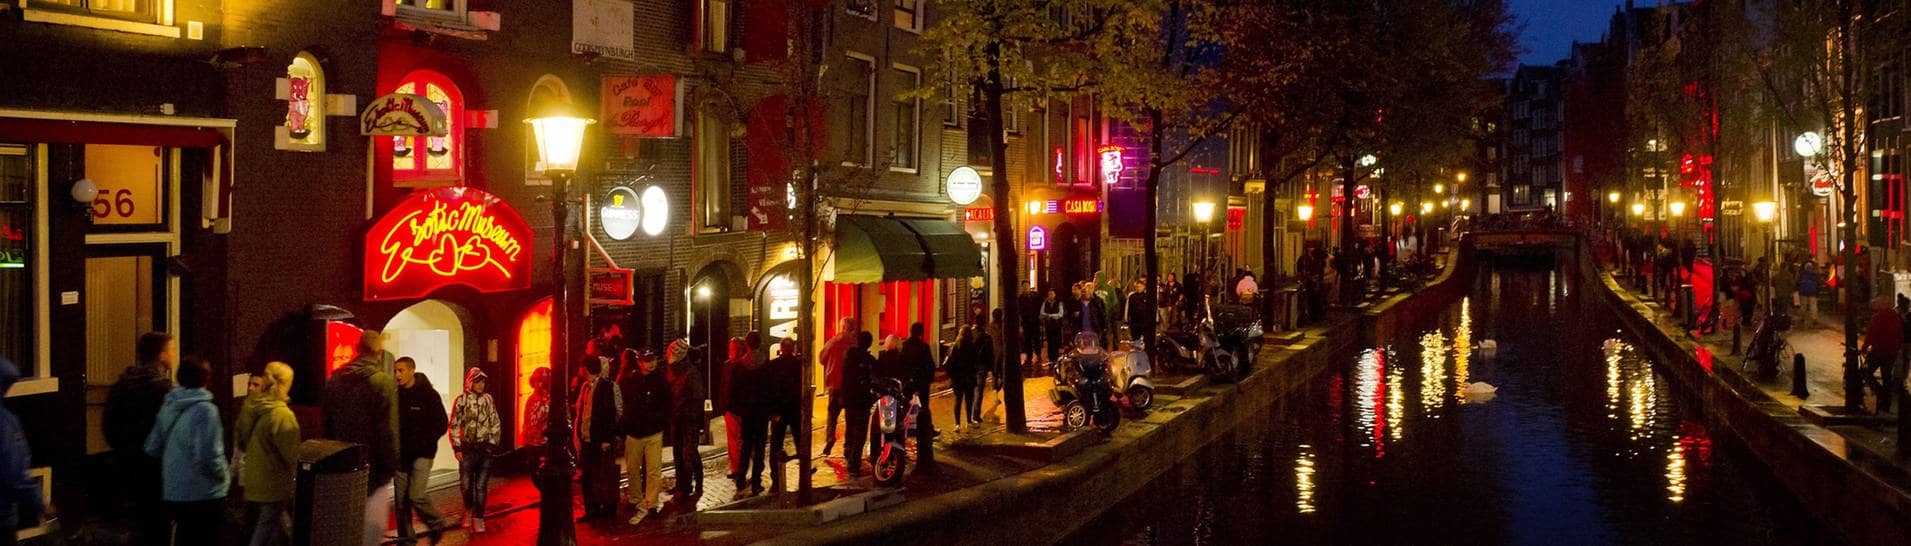 Menschen schlendern in Amsterdam am Abend an einer Gracht entlang durch den Rotlichtbezirk De Wallen.